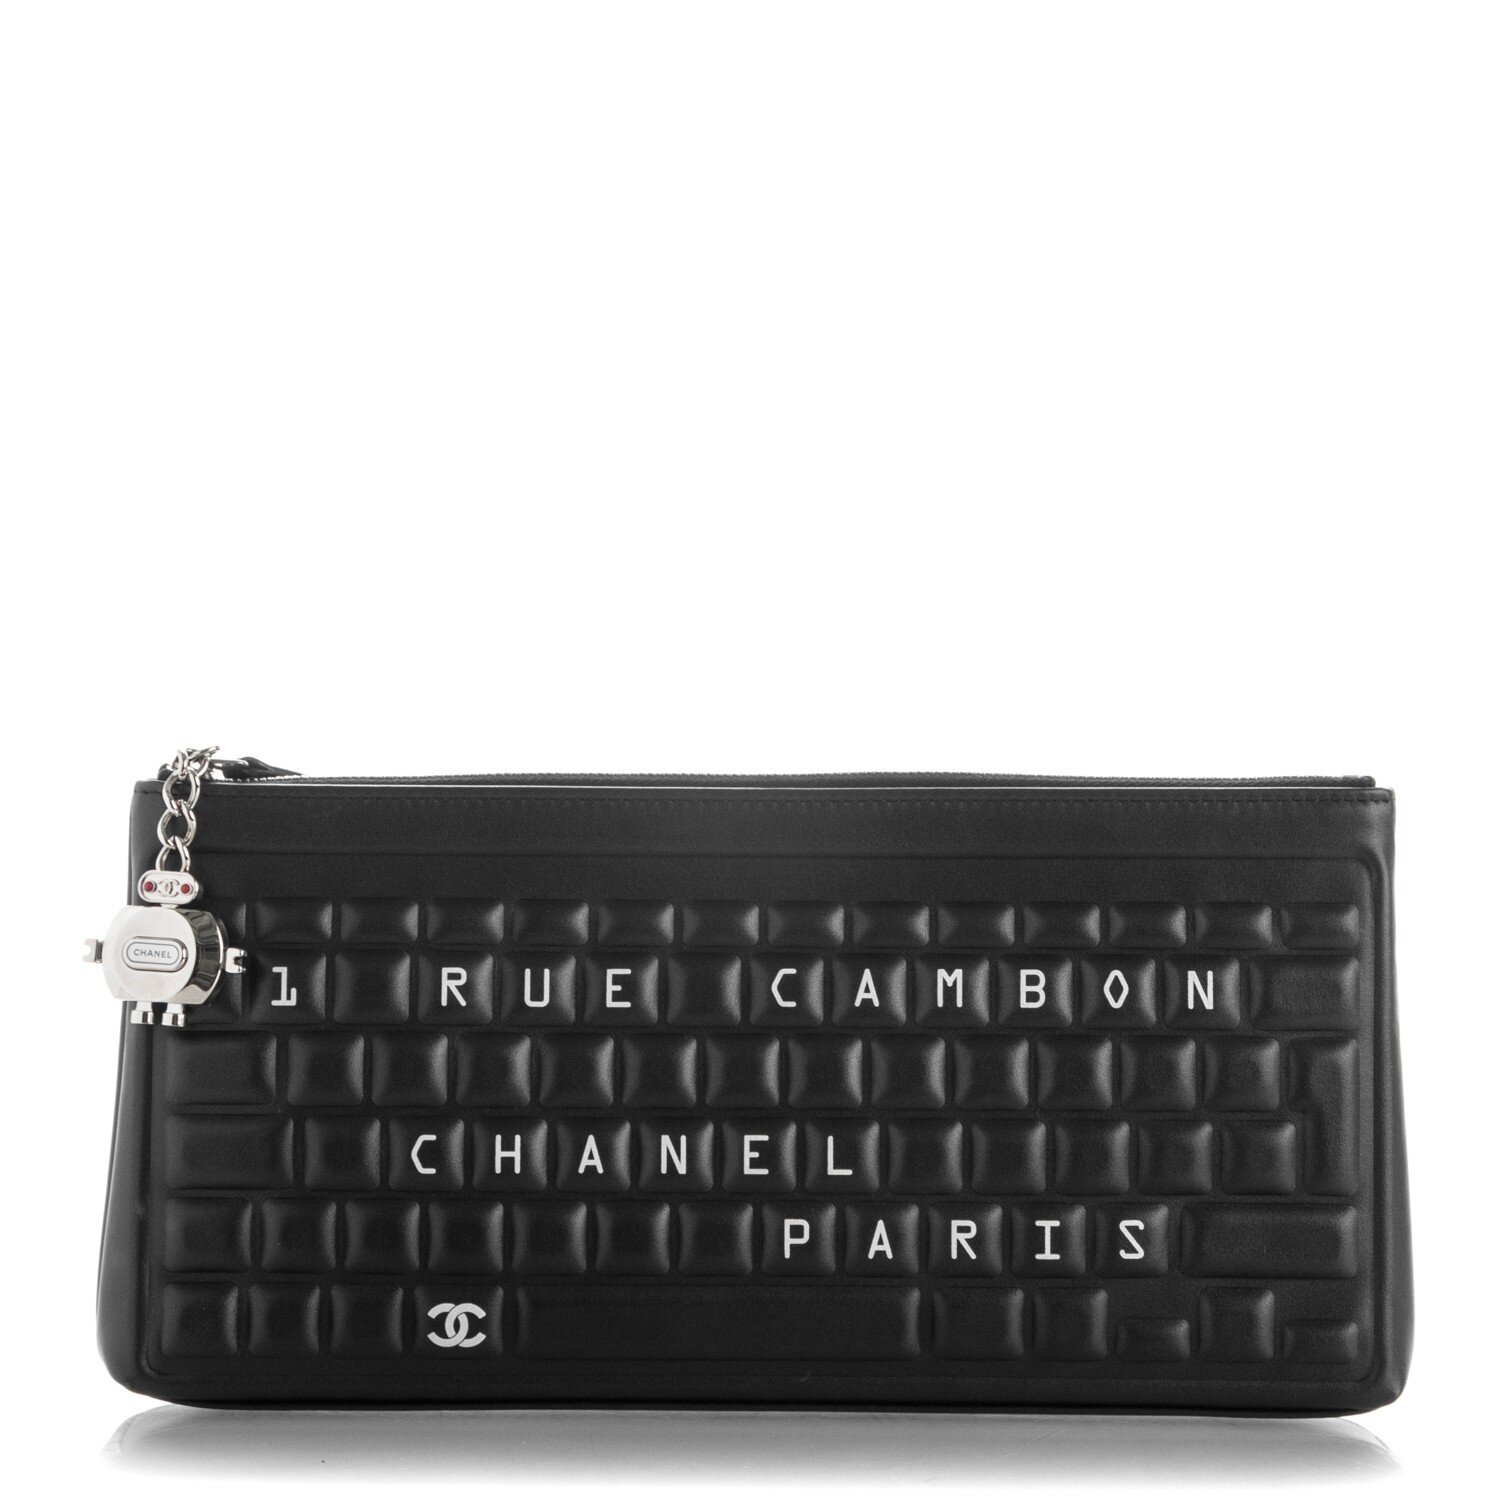 Chanel Keyboard Clutch in Black.jpg